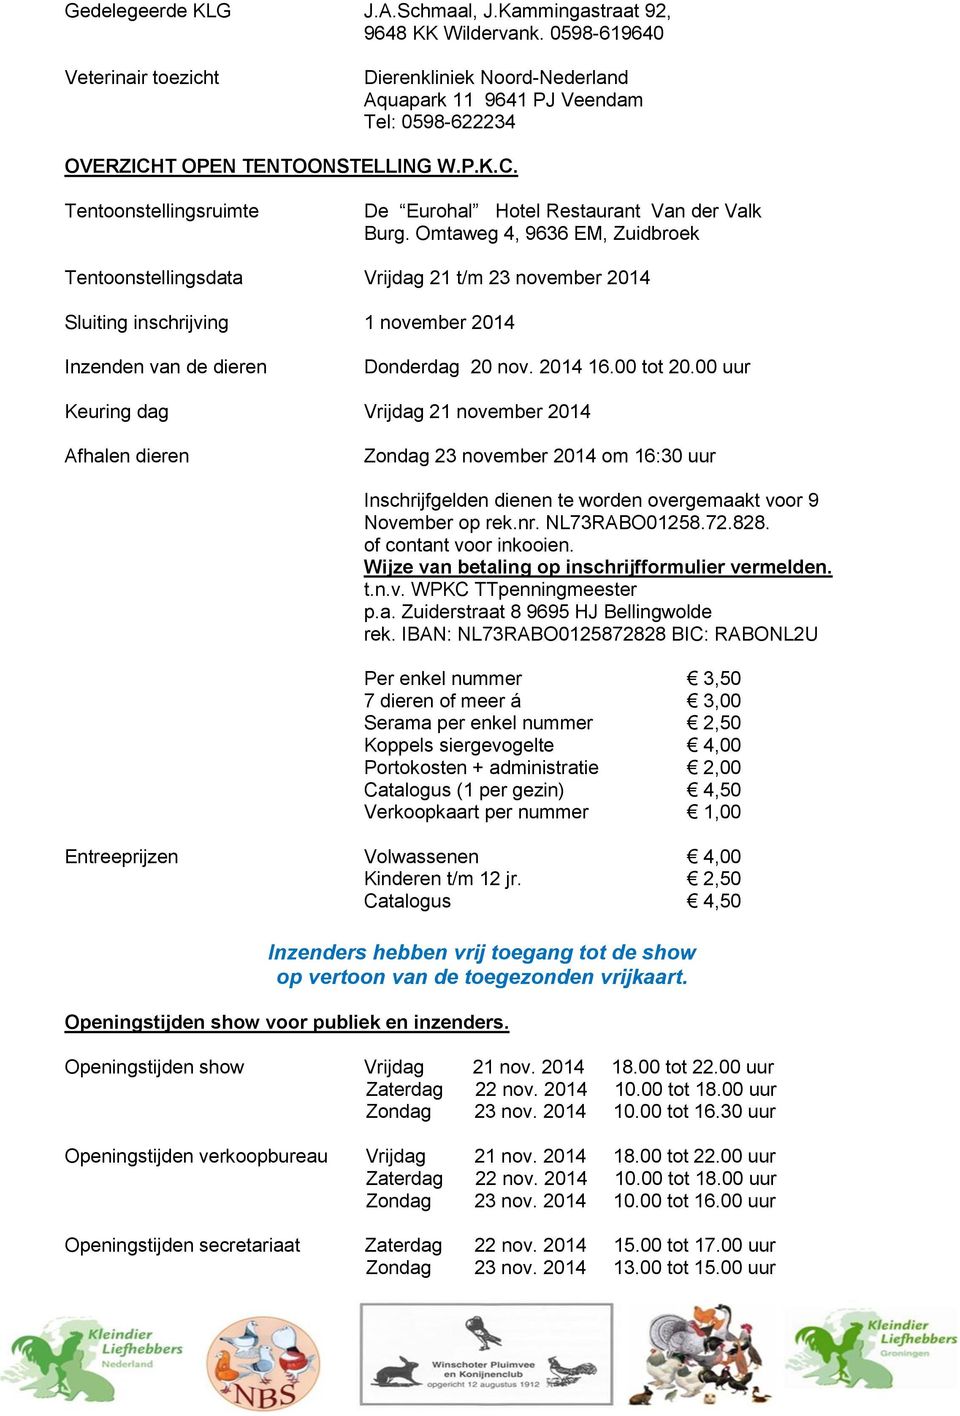 Omtaweg 4, 9636 EM, Zuidbroek Tentoonstellingsdata Vrijdag 21 t/m 23 november 2014 Sluiting inschrijving 1 november 2014 Inzenden van de dieren Donderdag 20 nov. 2014 16.00 tot 20.